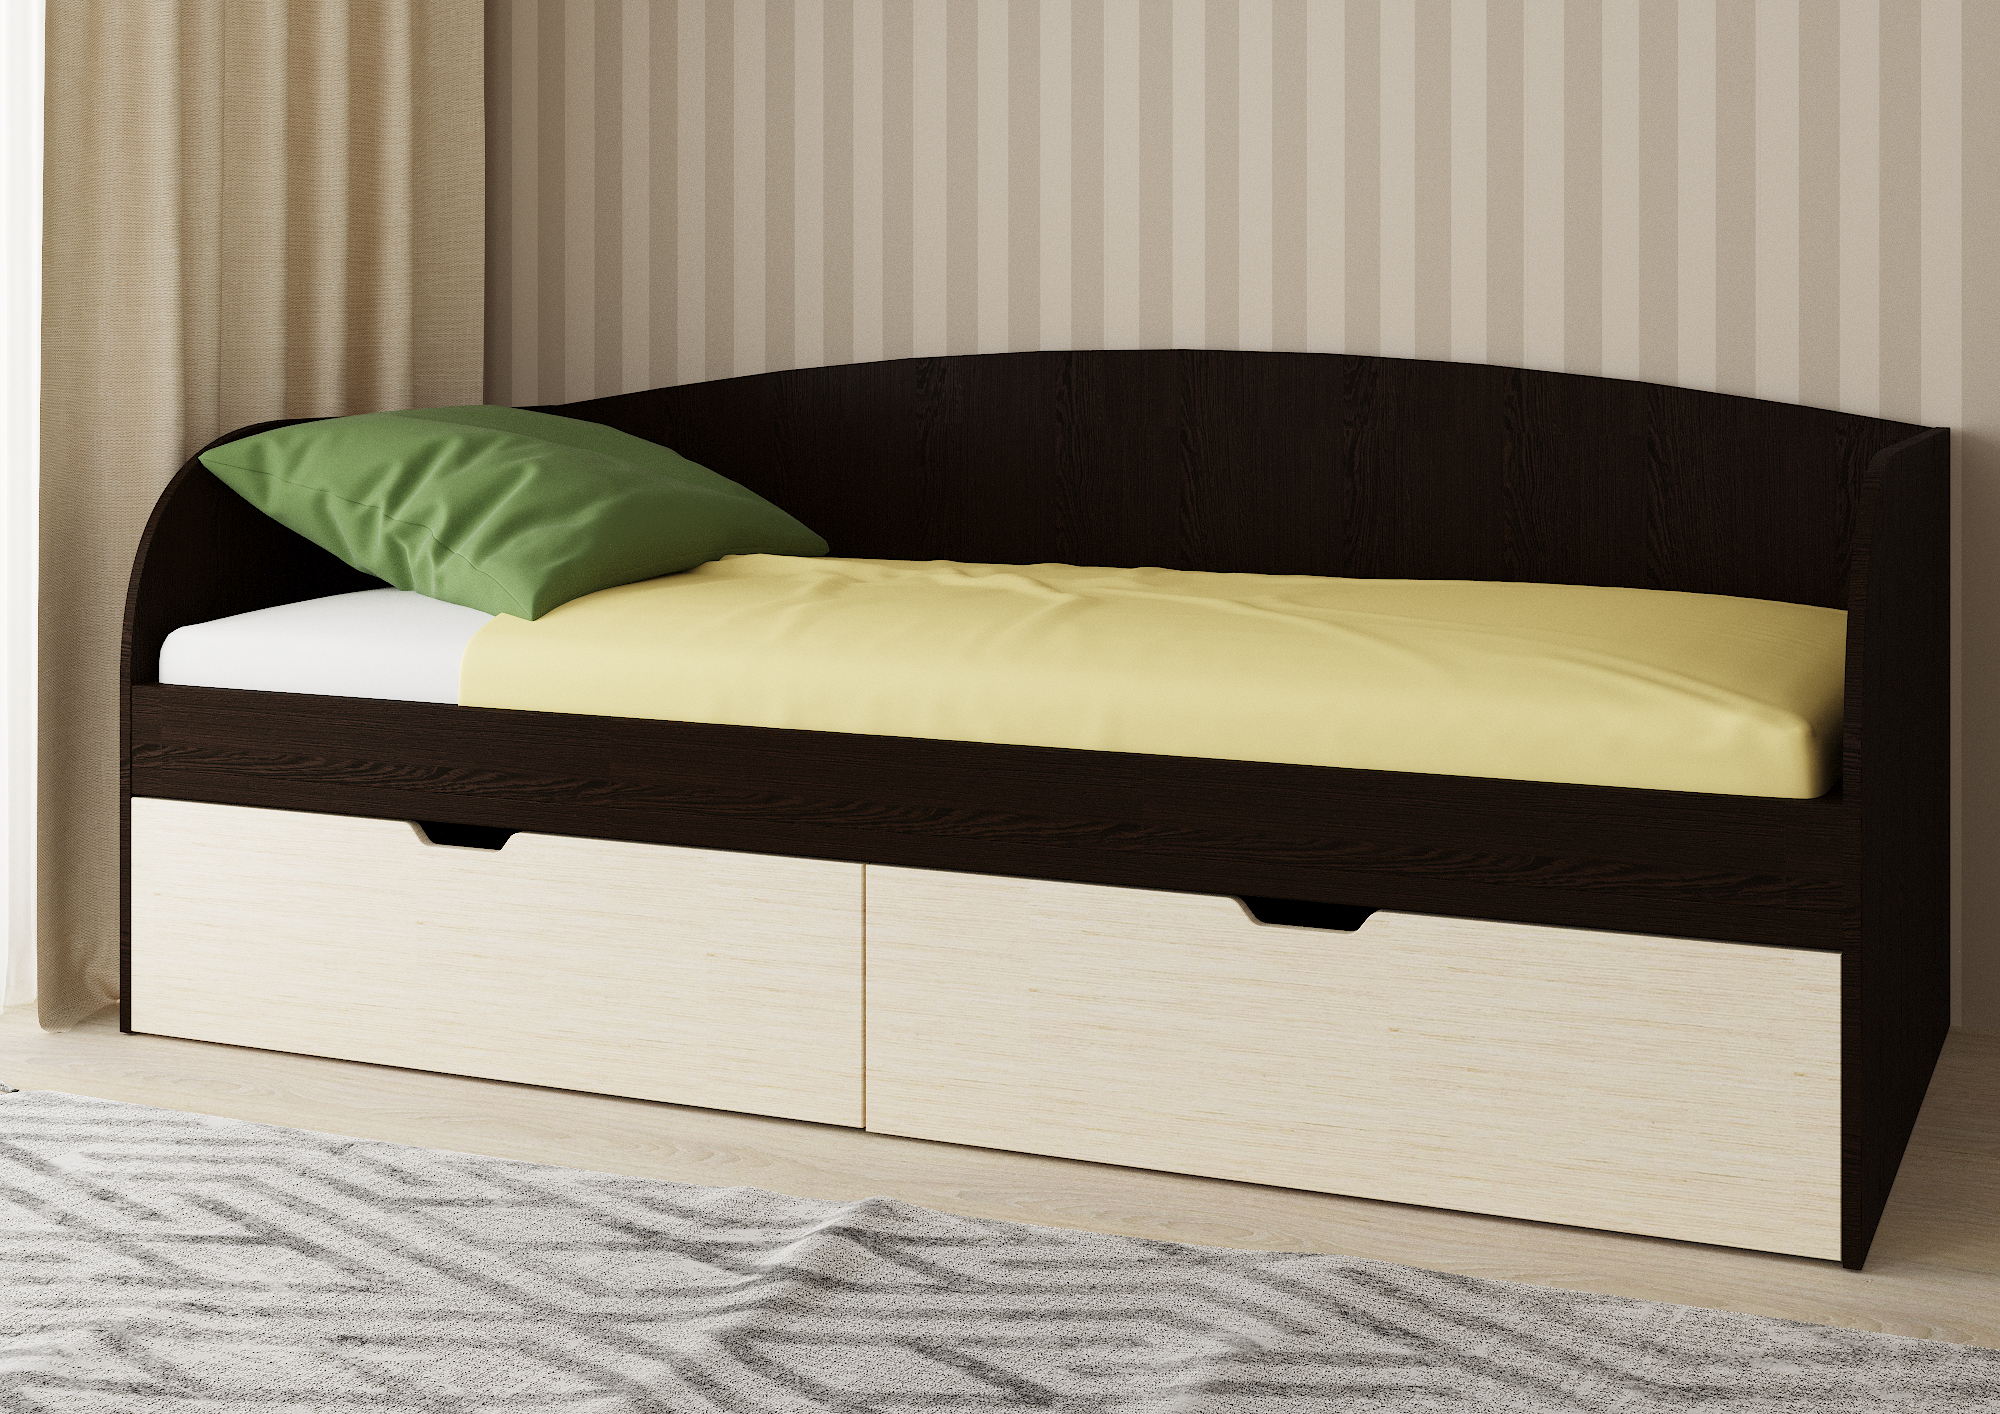 Арчи мебель кровать СН 108.02